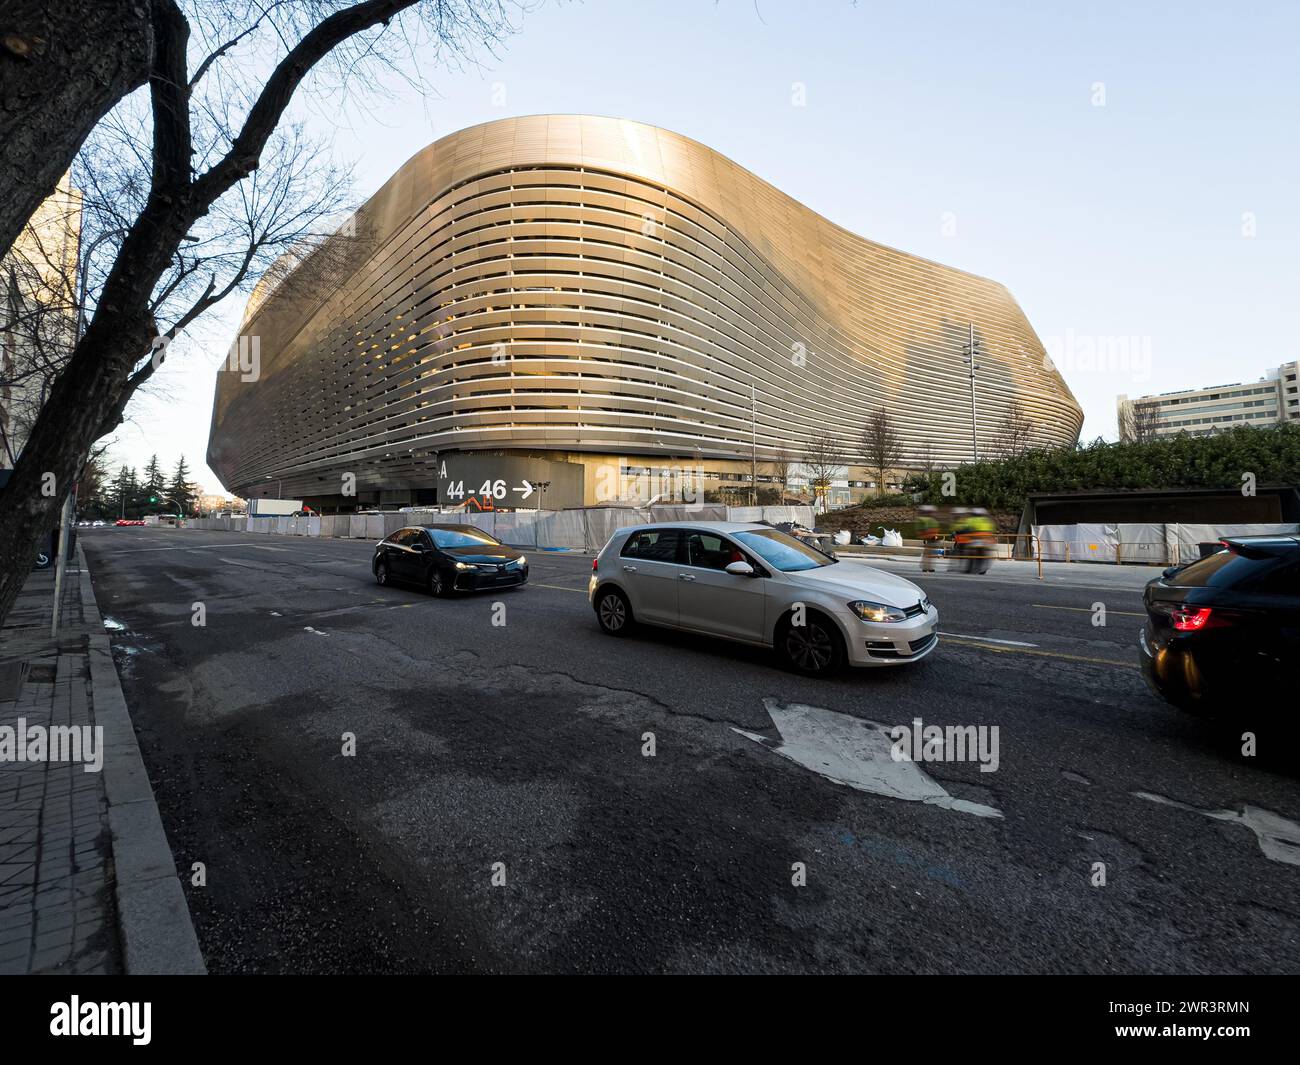 Madrid, España - 1 de febrero de 2024: Exterior del Santiago Bernabéu, estadio de fútbol del Real Madrid, durante las obras de renovación. Foto de stock